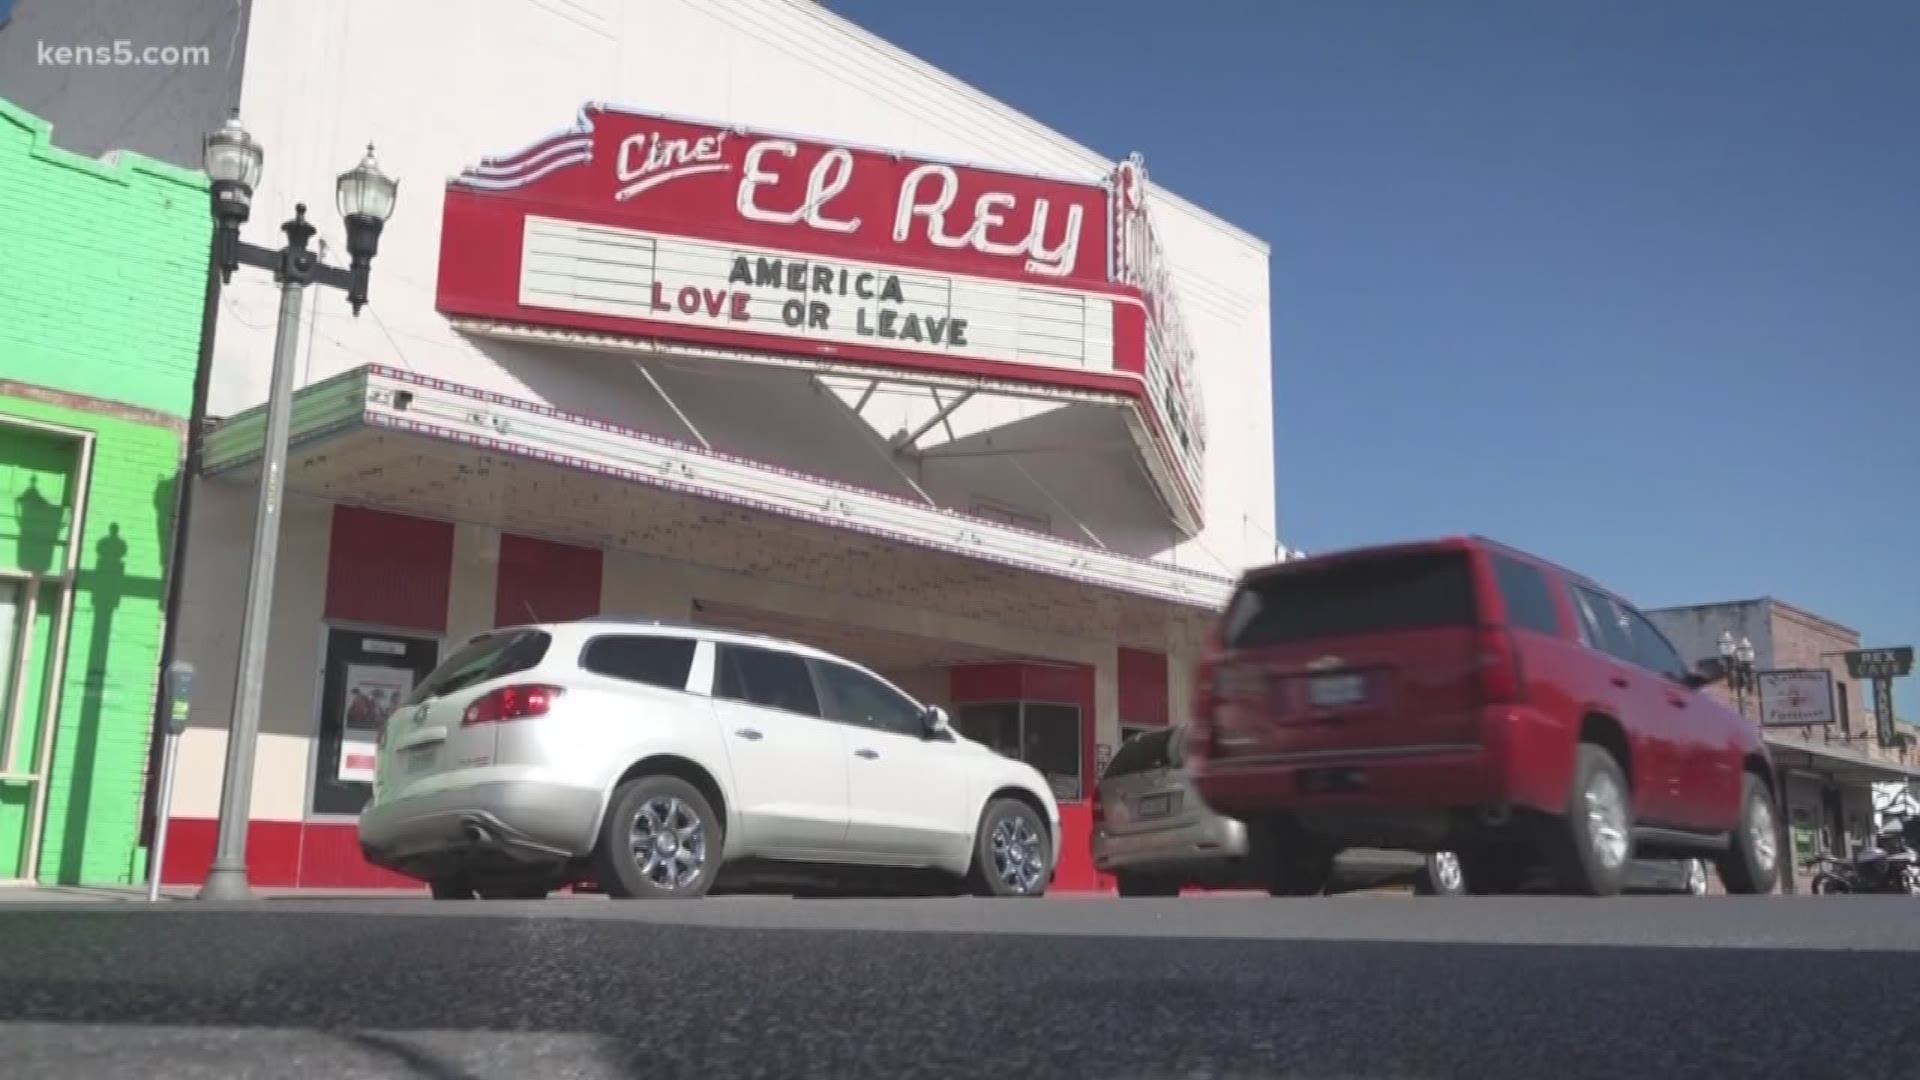 "I believe in the power of art," said Bert Guerra, owner of the Cine El Rey in McAllen, Texas.